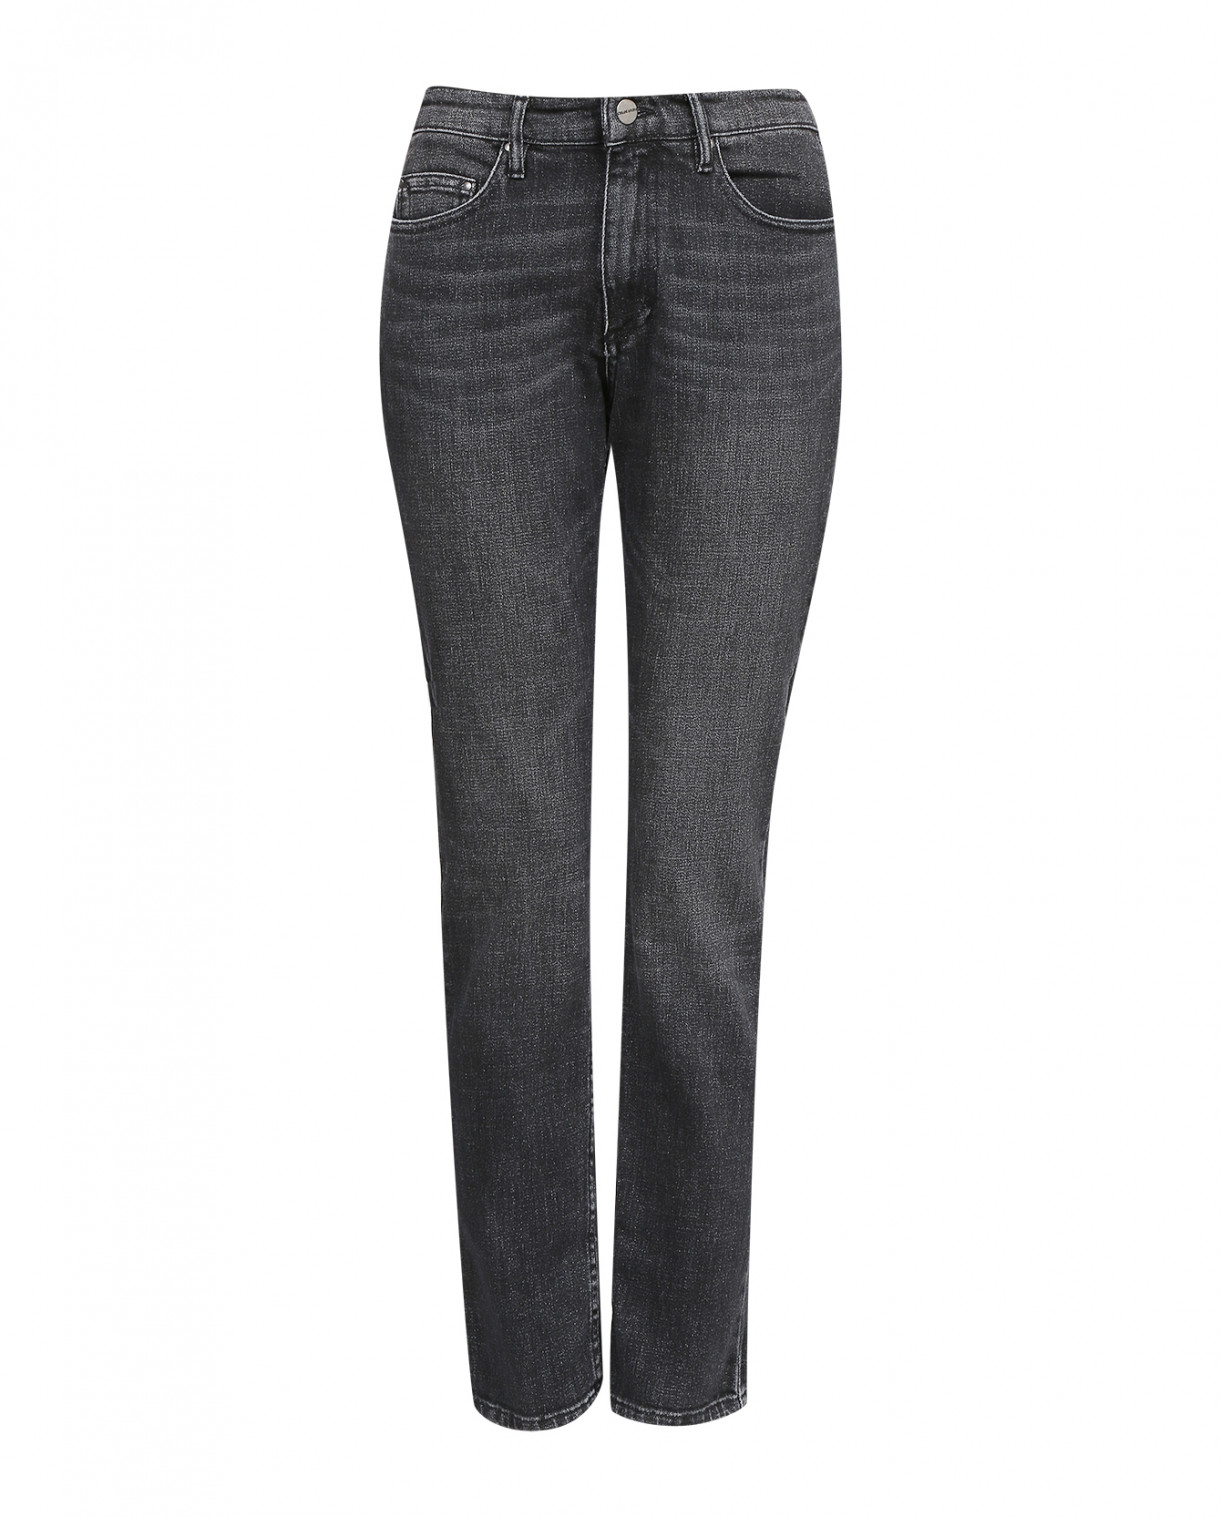 Серые джинсы прямого фасона Chloé Stora  –  Общий вид  – Цвет:  Серый